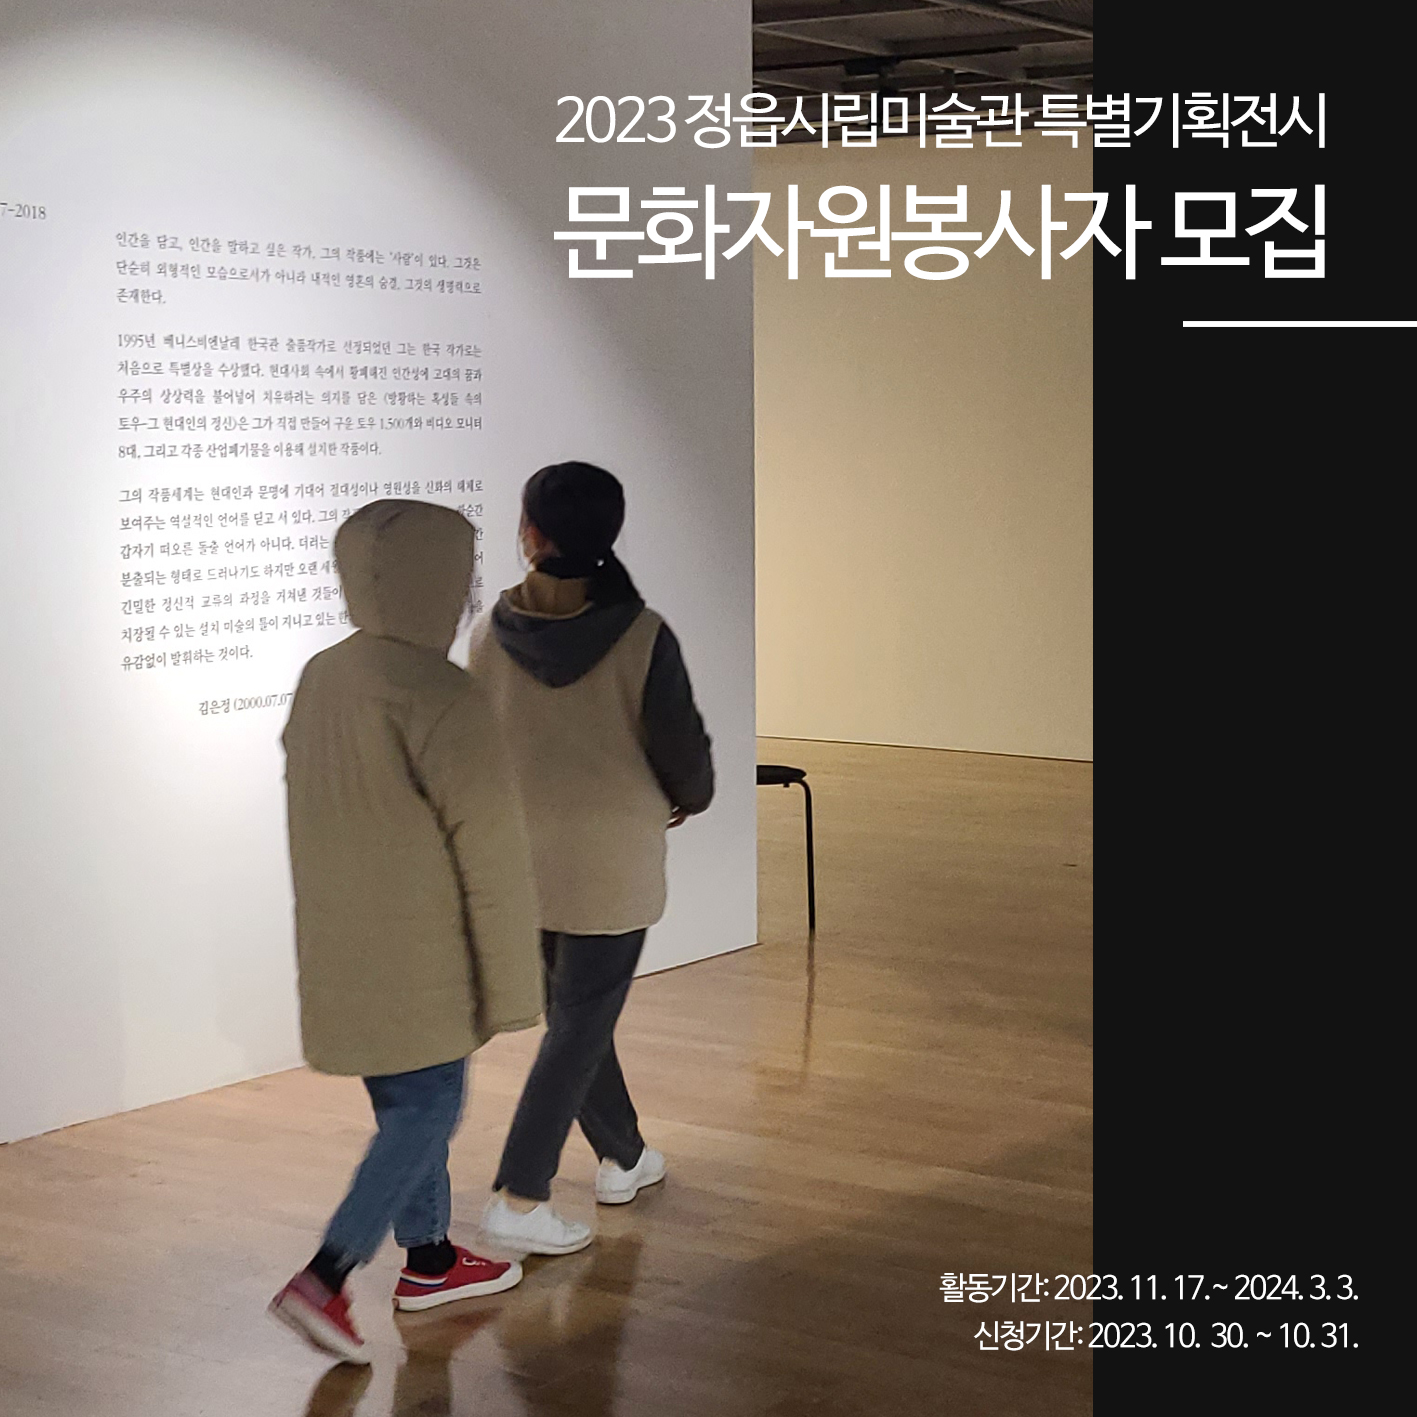 2023 정읍시립미술관 문화자원봉사자 모집